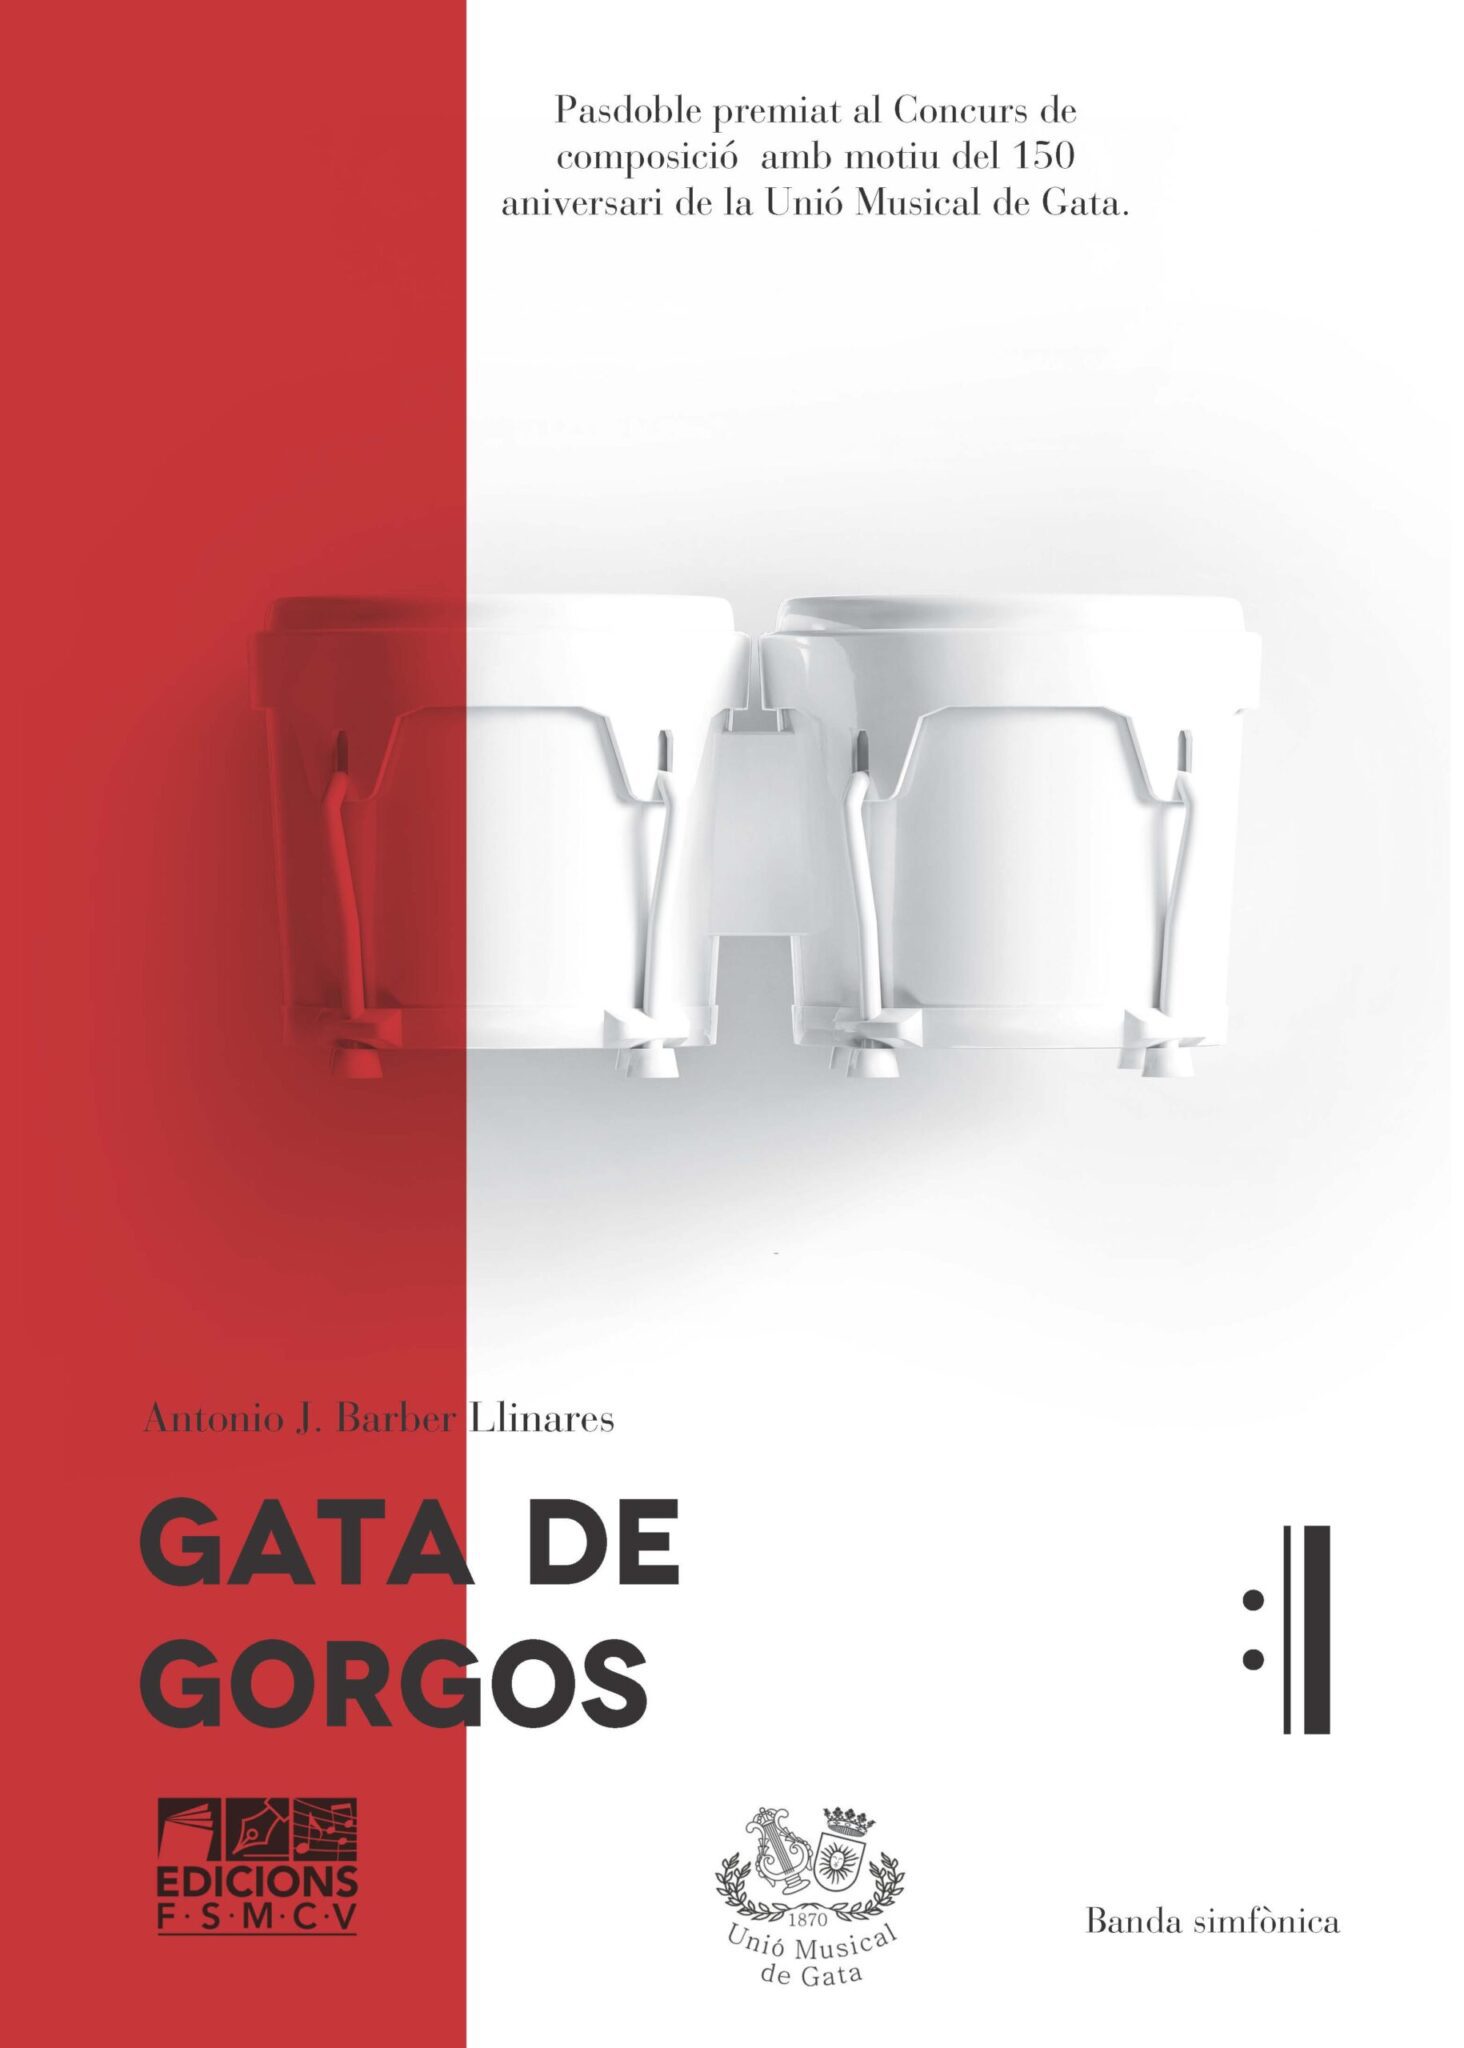 26. GATA DE GORGOS scaled scaled